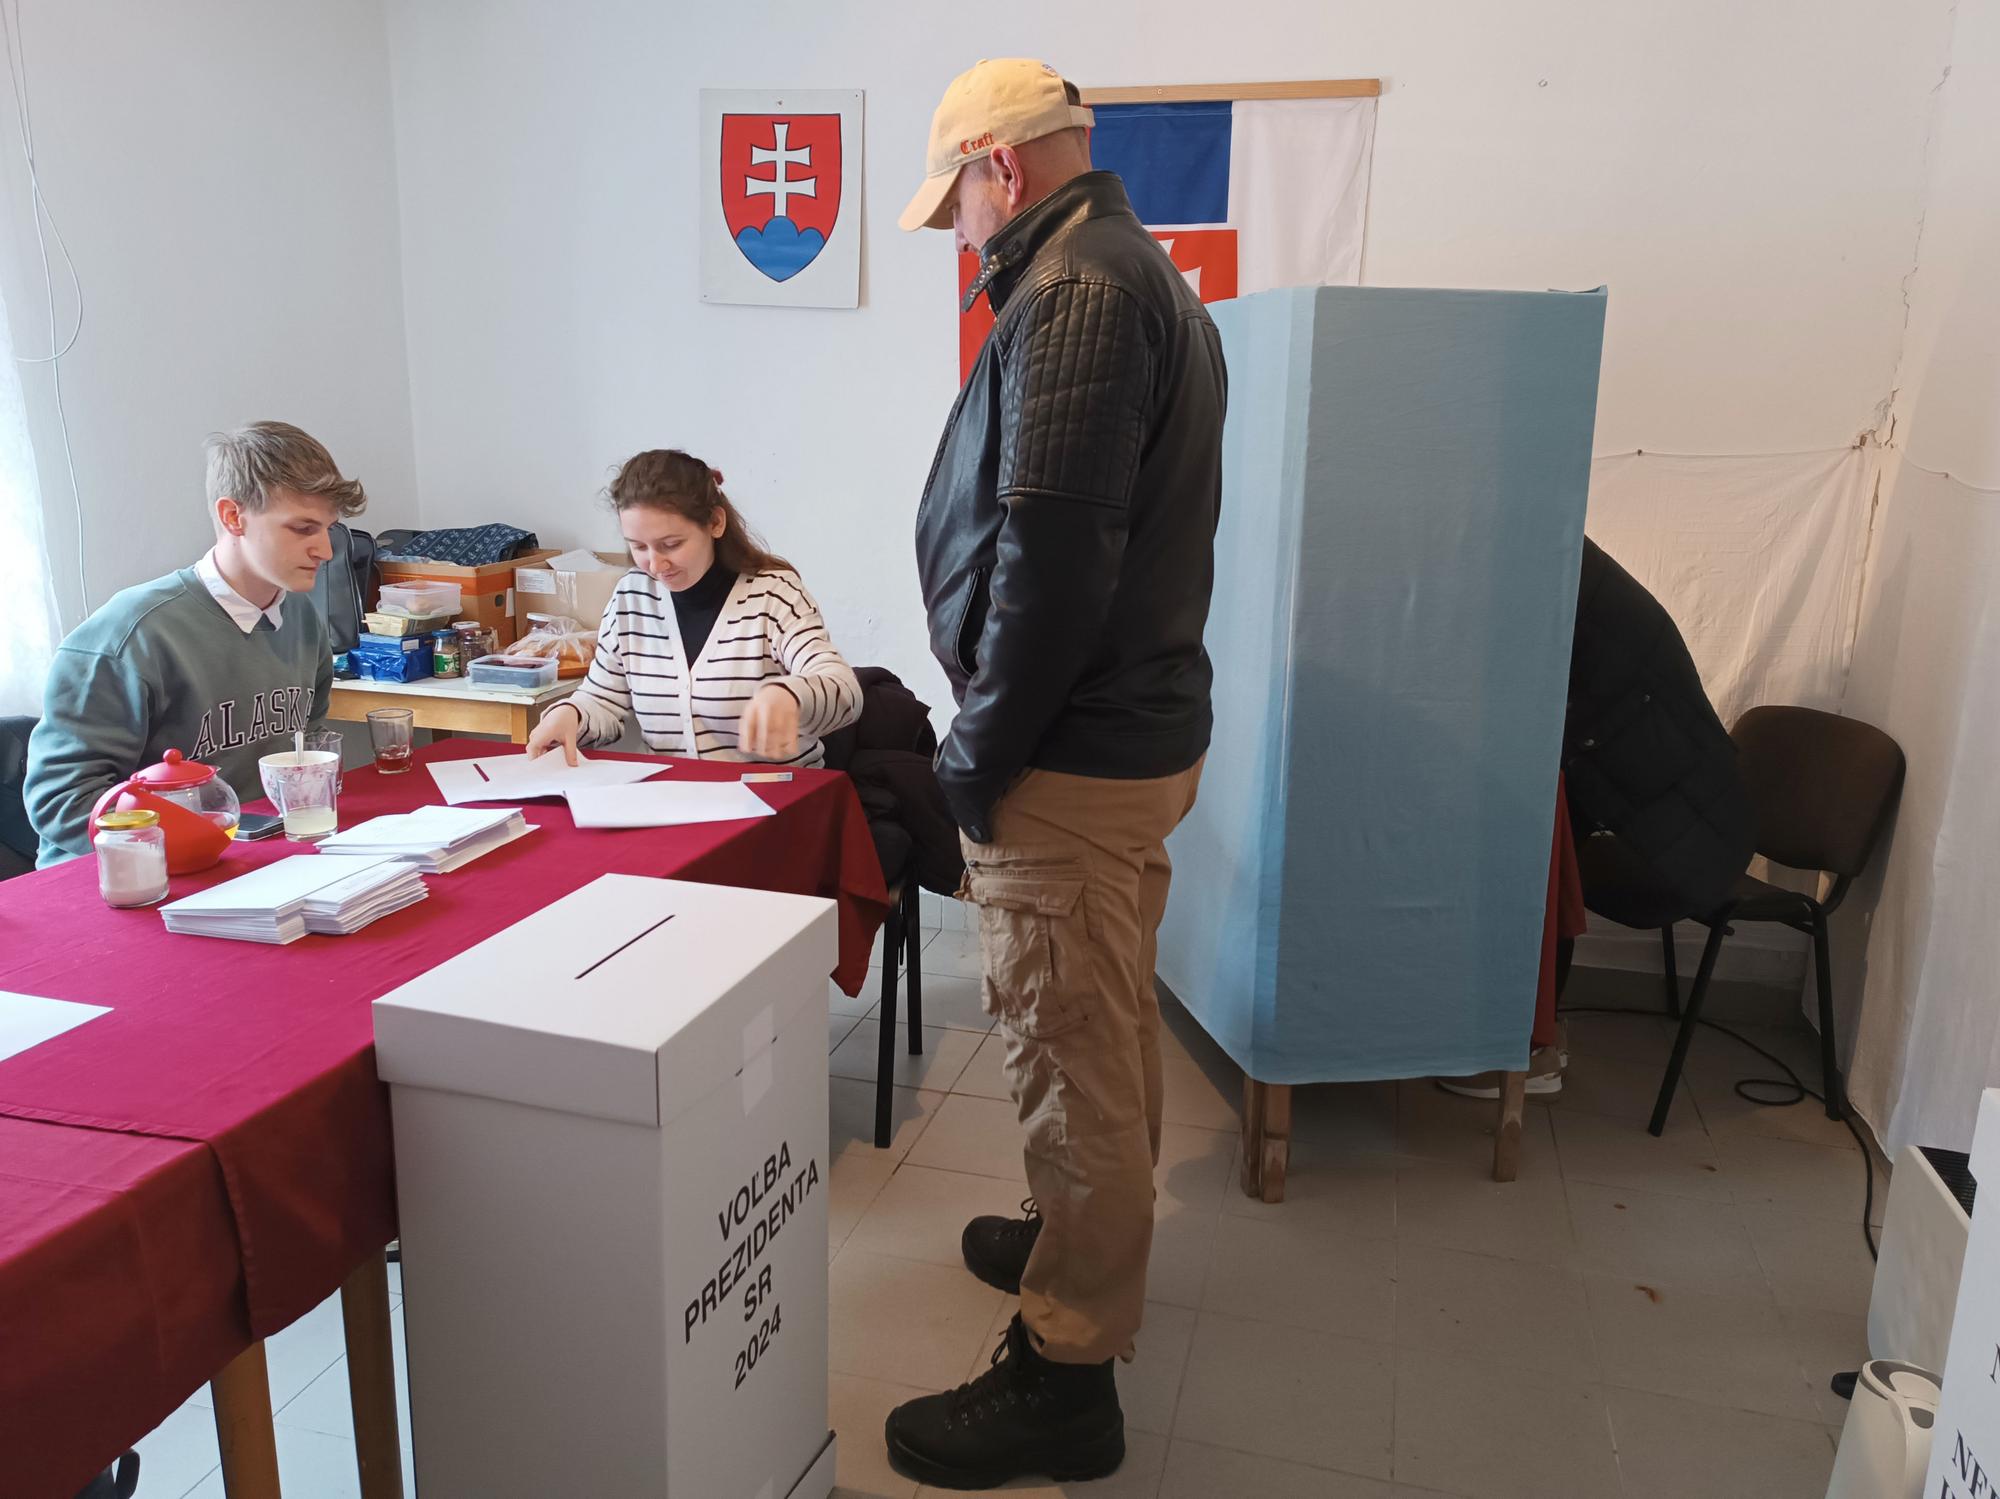 U Detvianská Huta ljudi također glasaju u zgradi autobusnog stajališta.